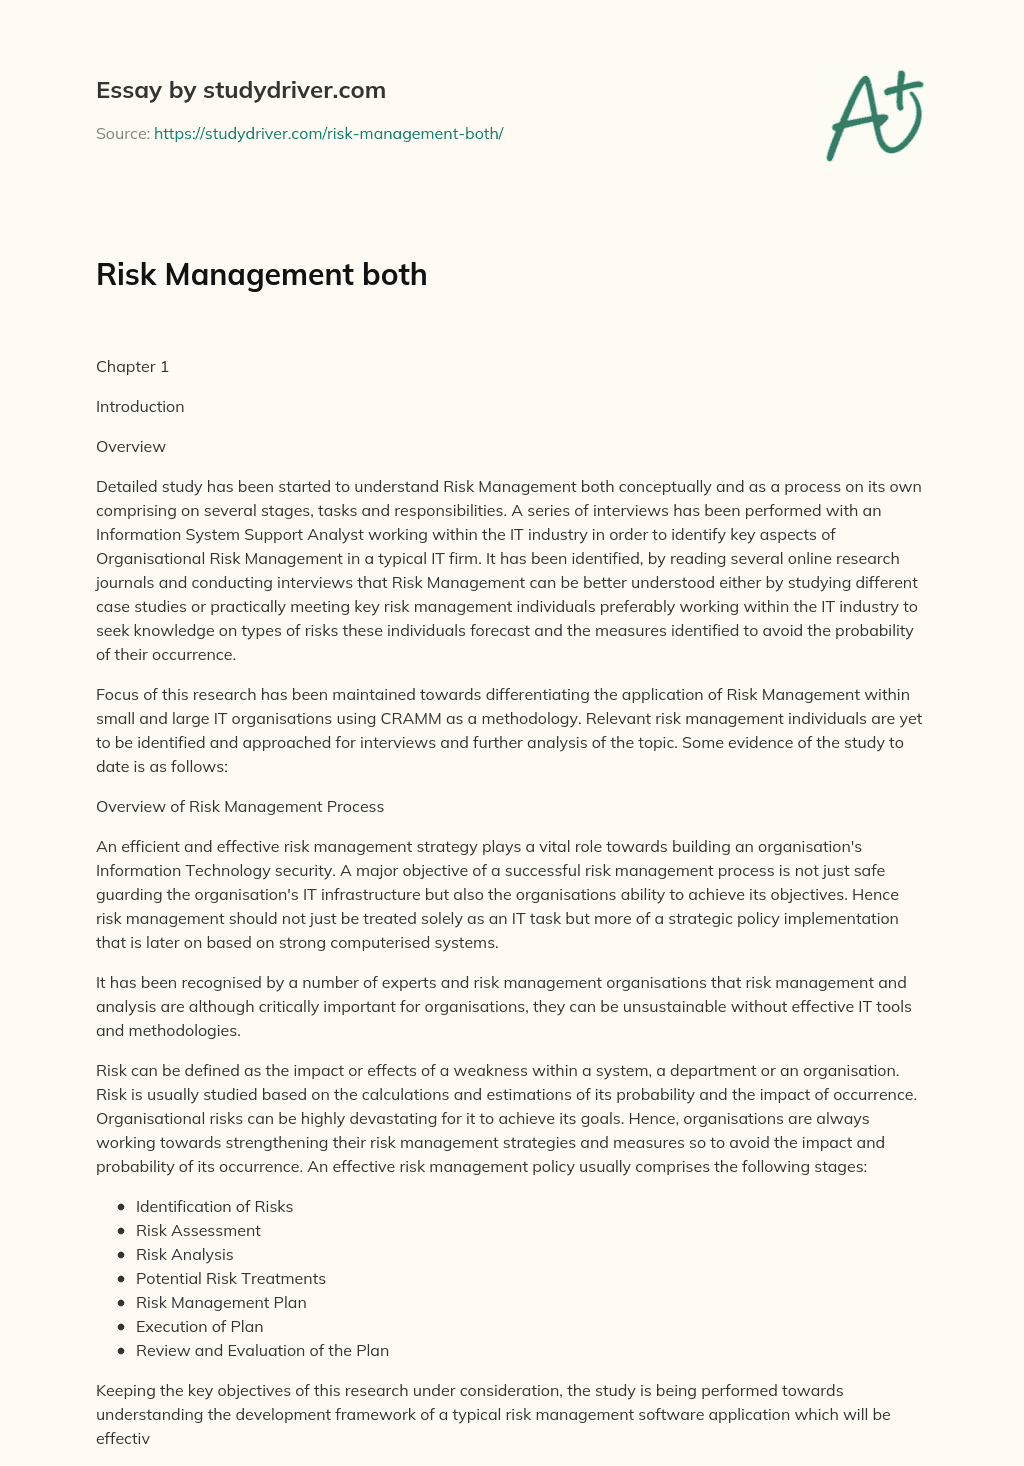 Risk Management both essay